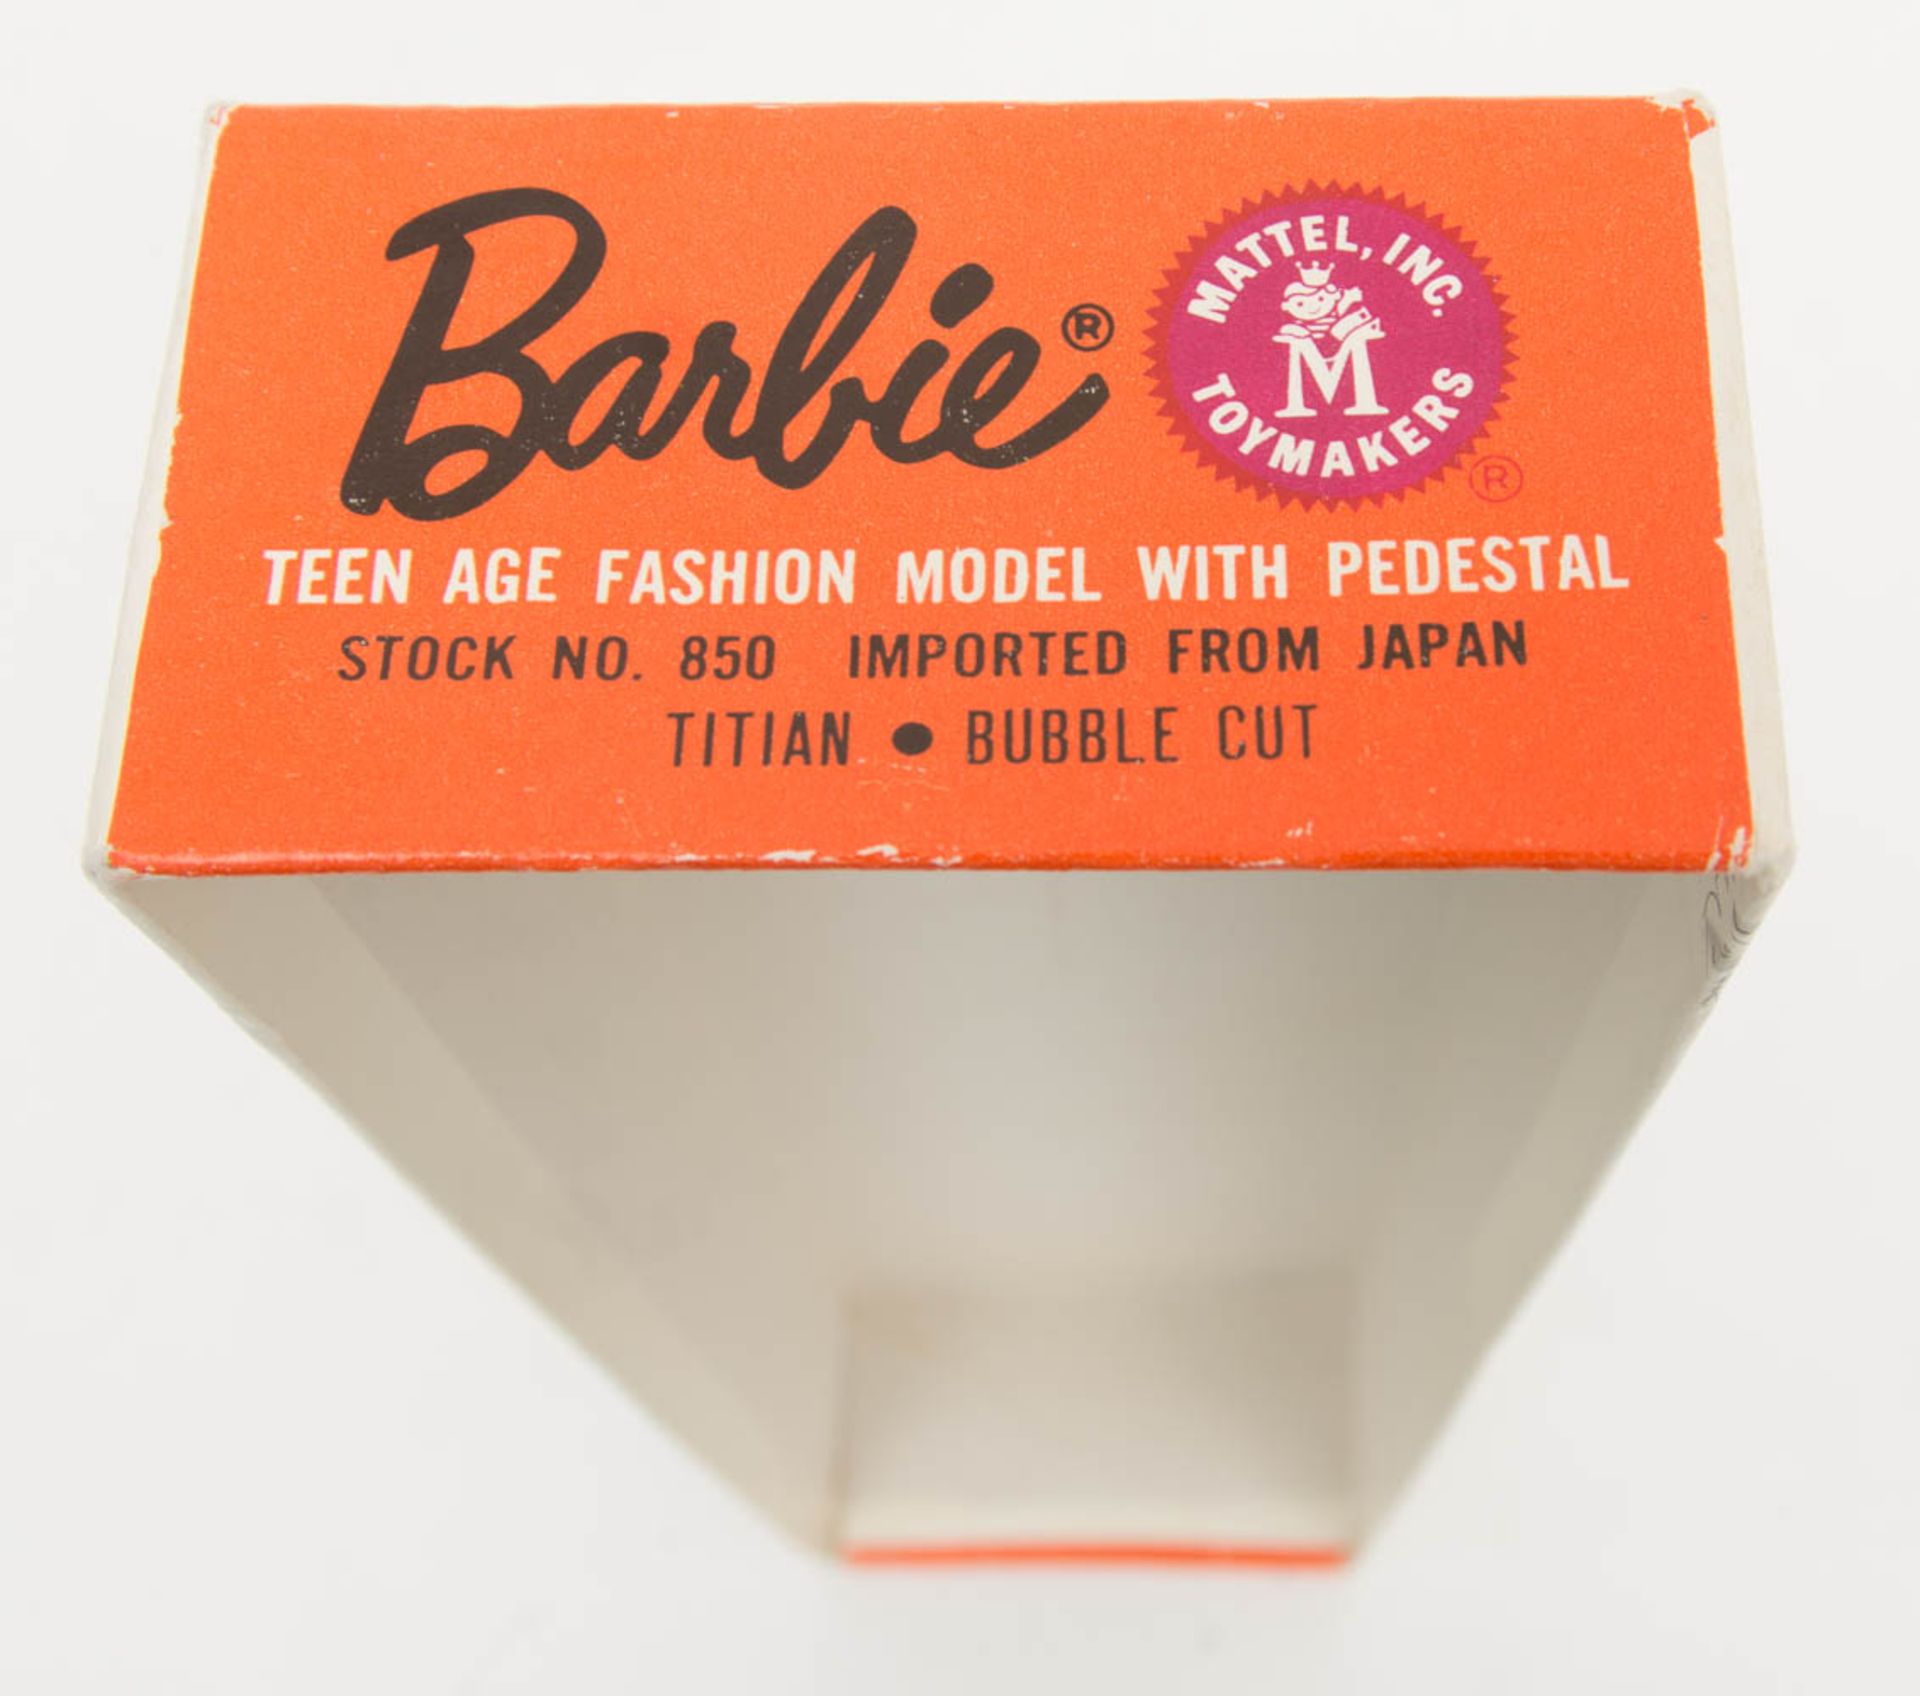 Barbie, by Mattel 1962.Antike Barbiepuppe in Originalkarton. - Bild 7 aus 7